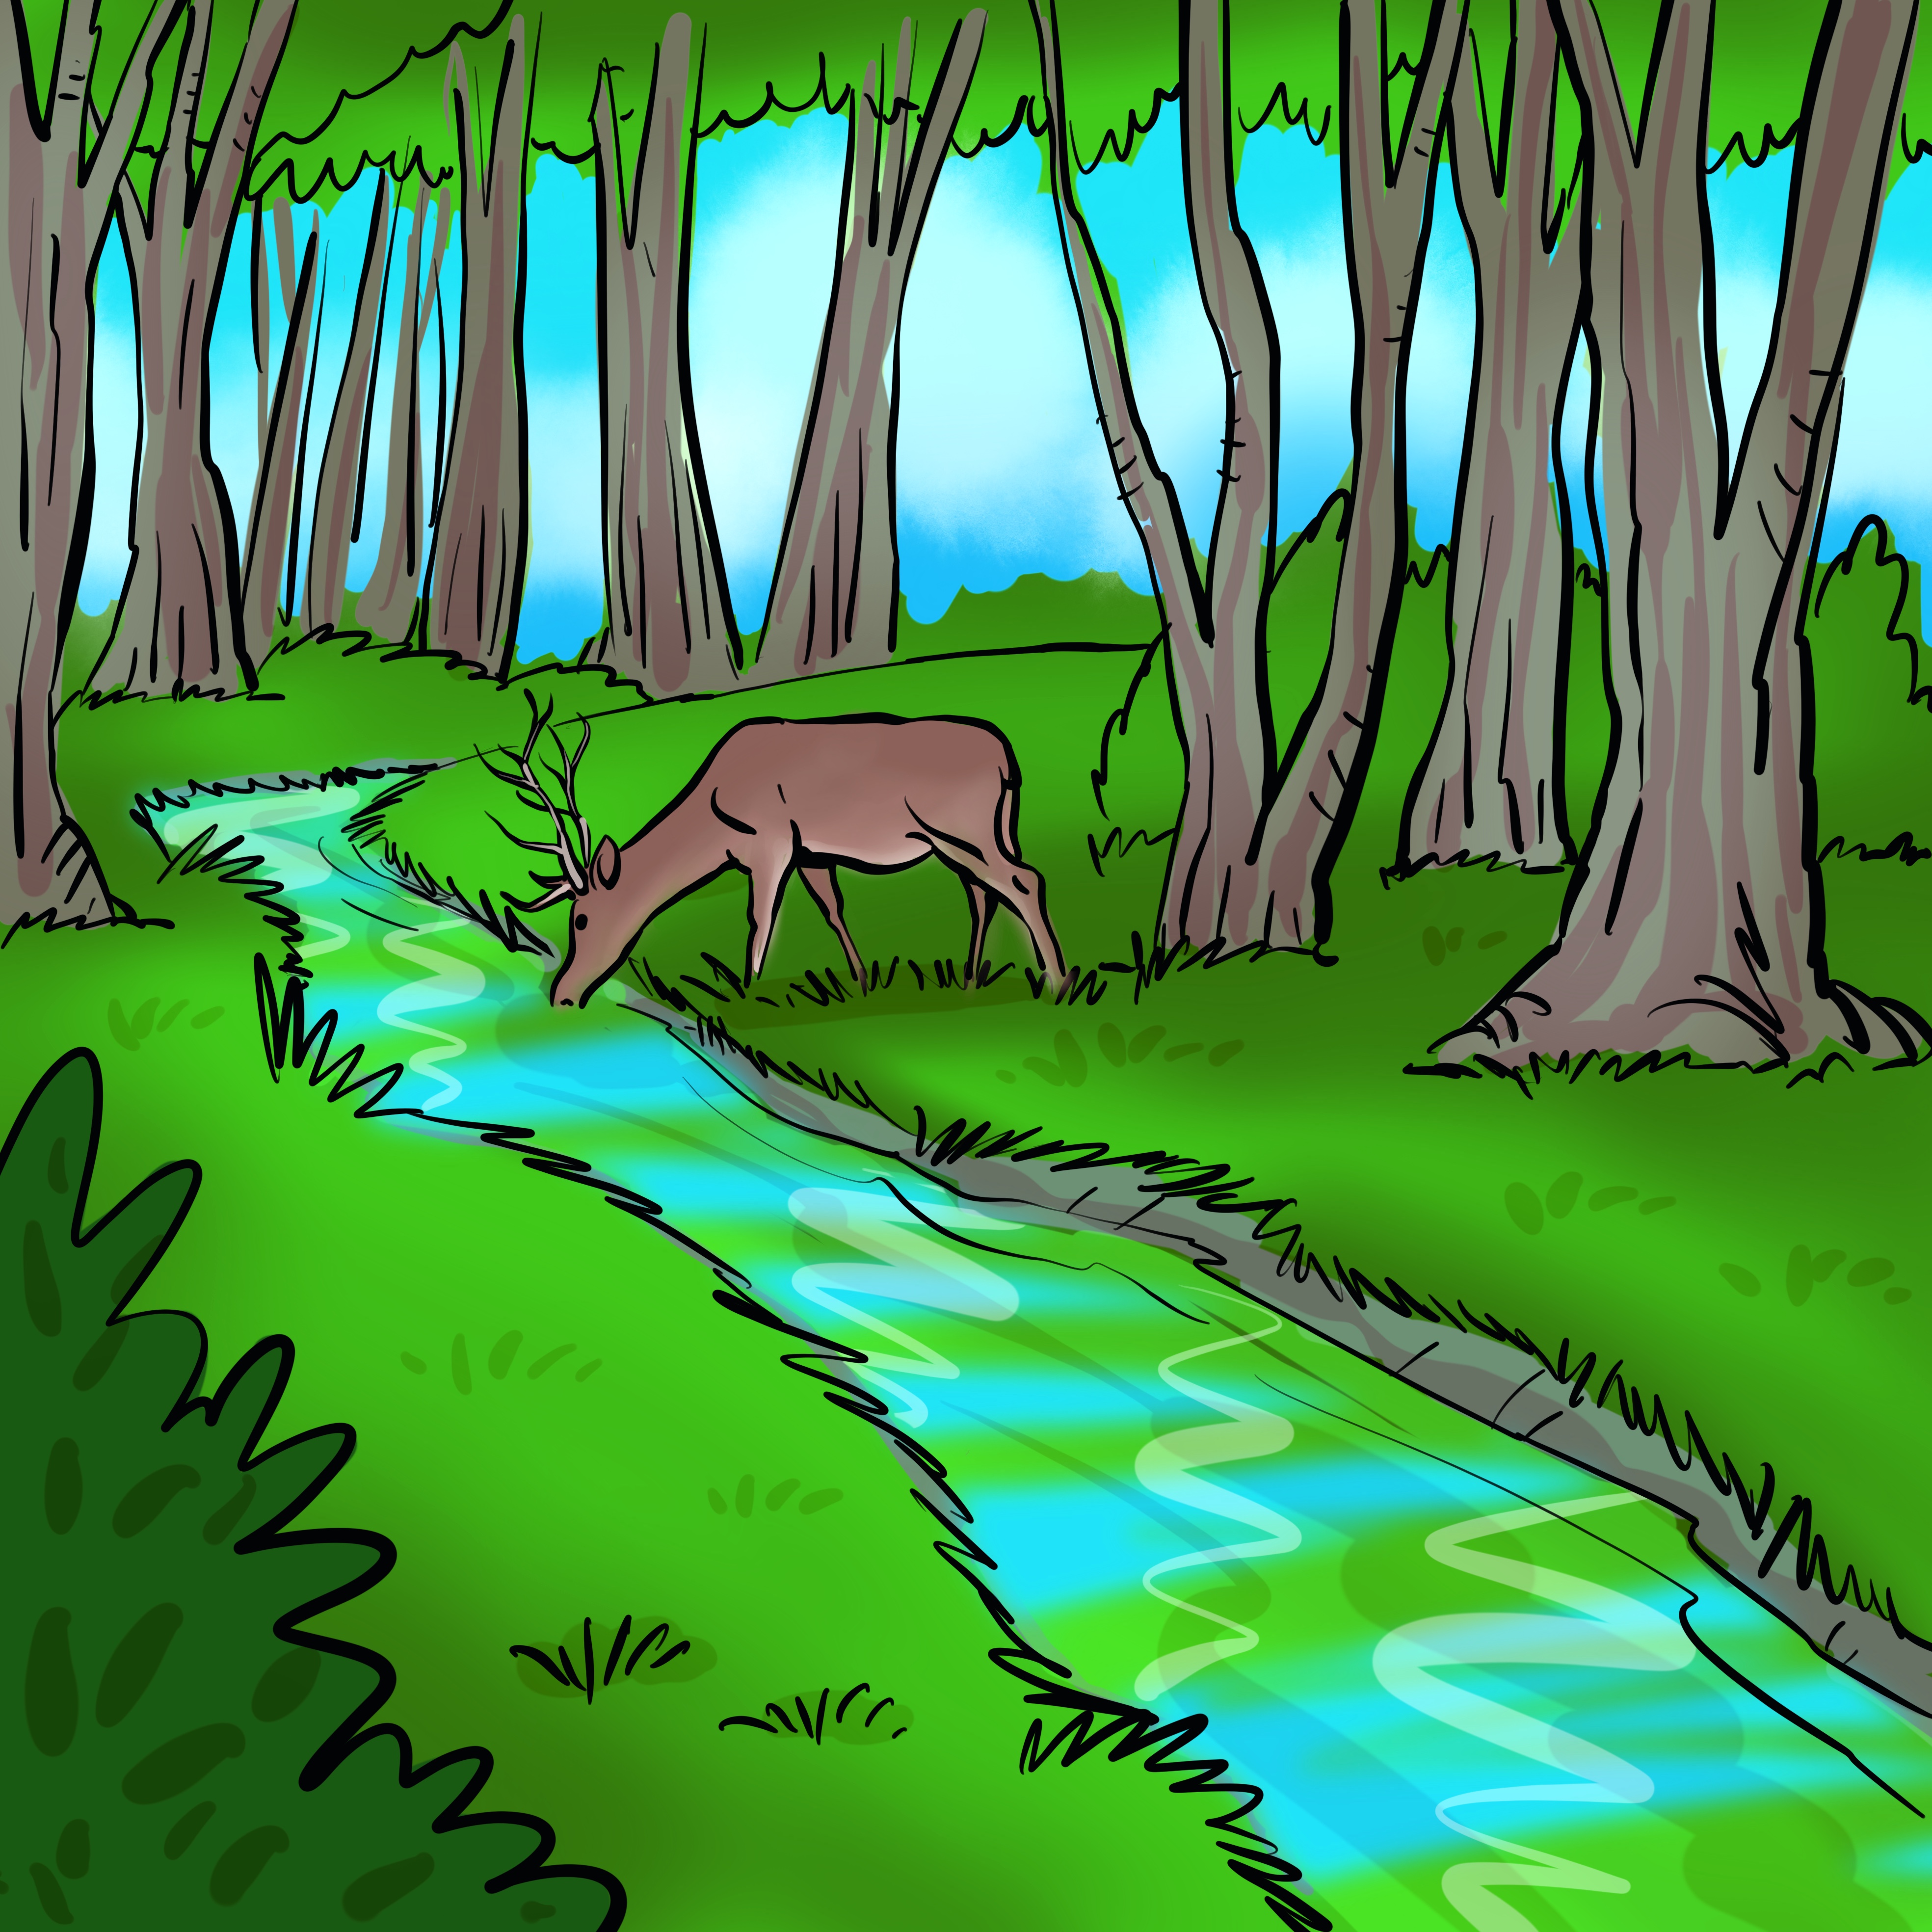 Šumski potok iz kojeg pije jelen.